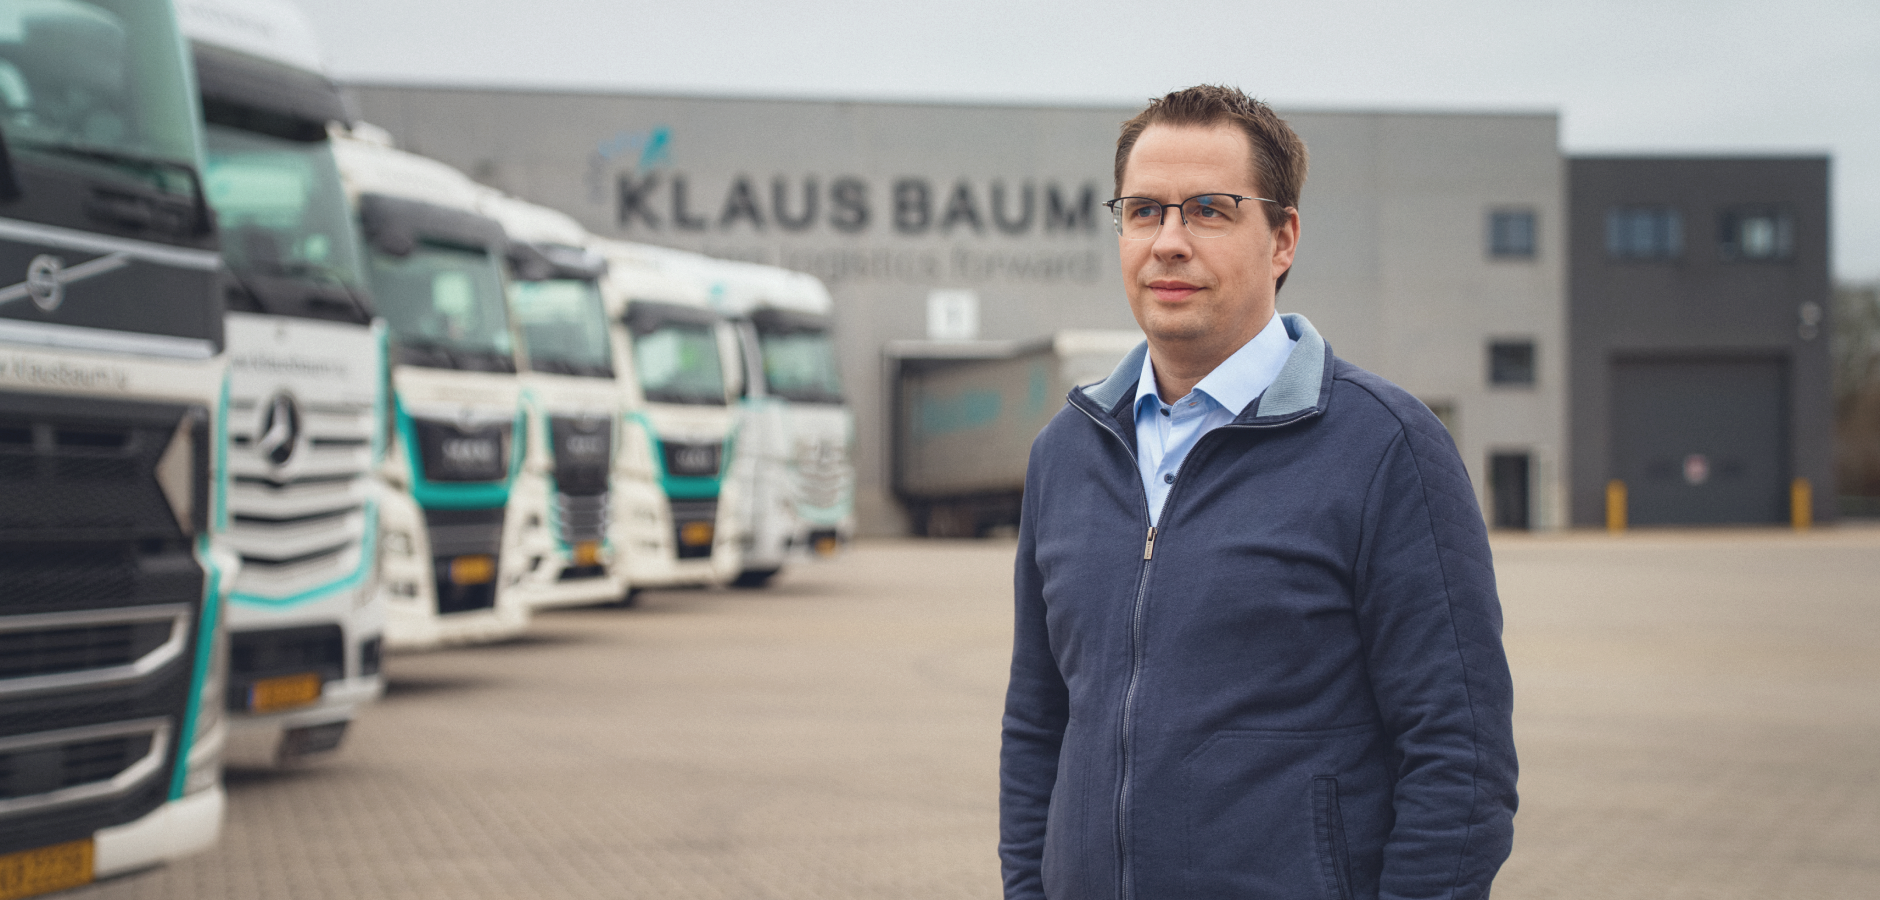 Andy Baum, CEO Klaus Baum Logistik, trusts ContiConnect